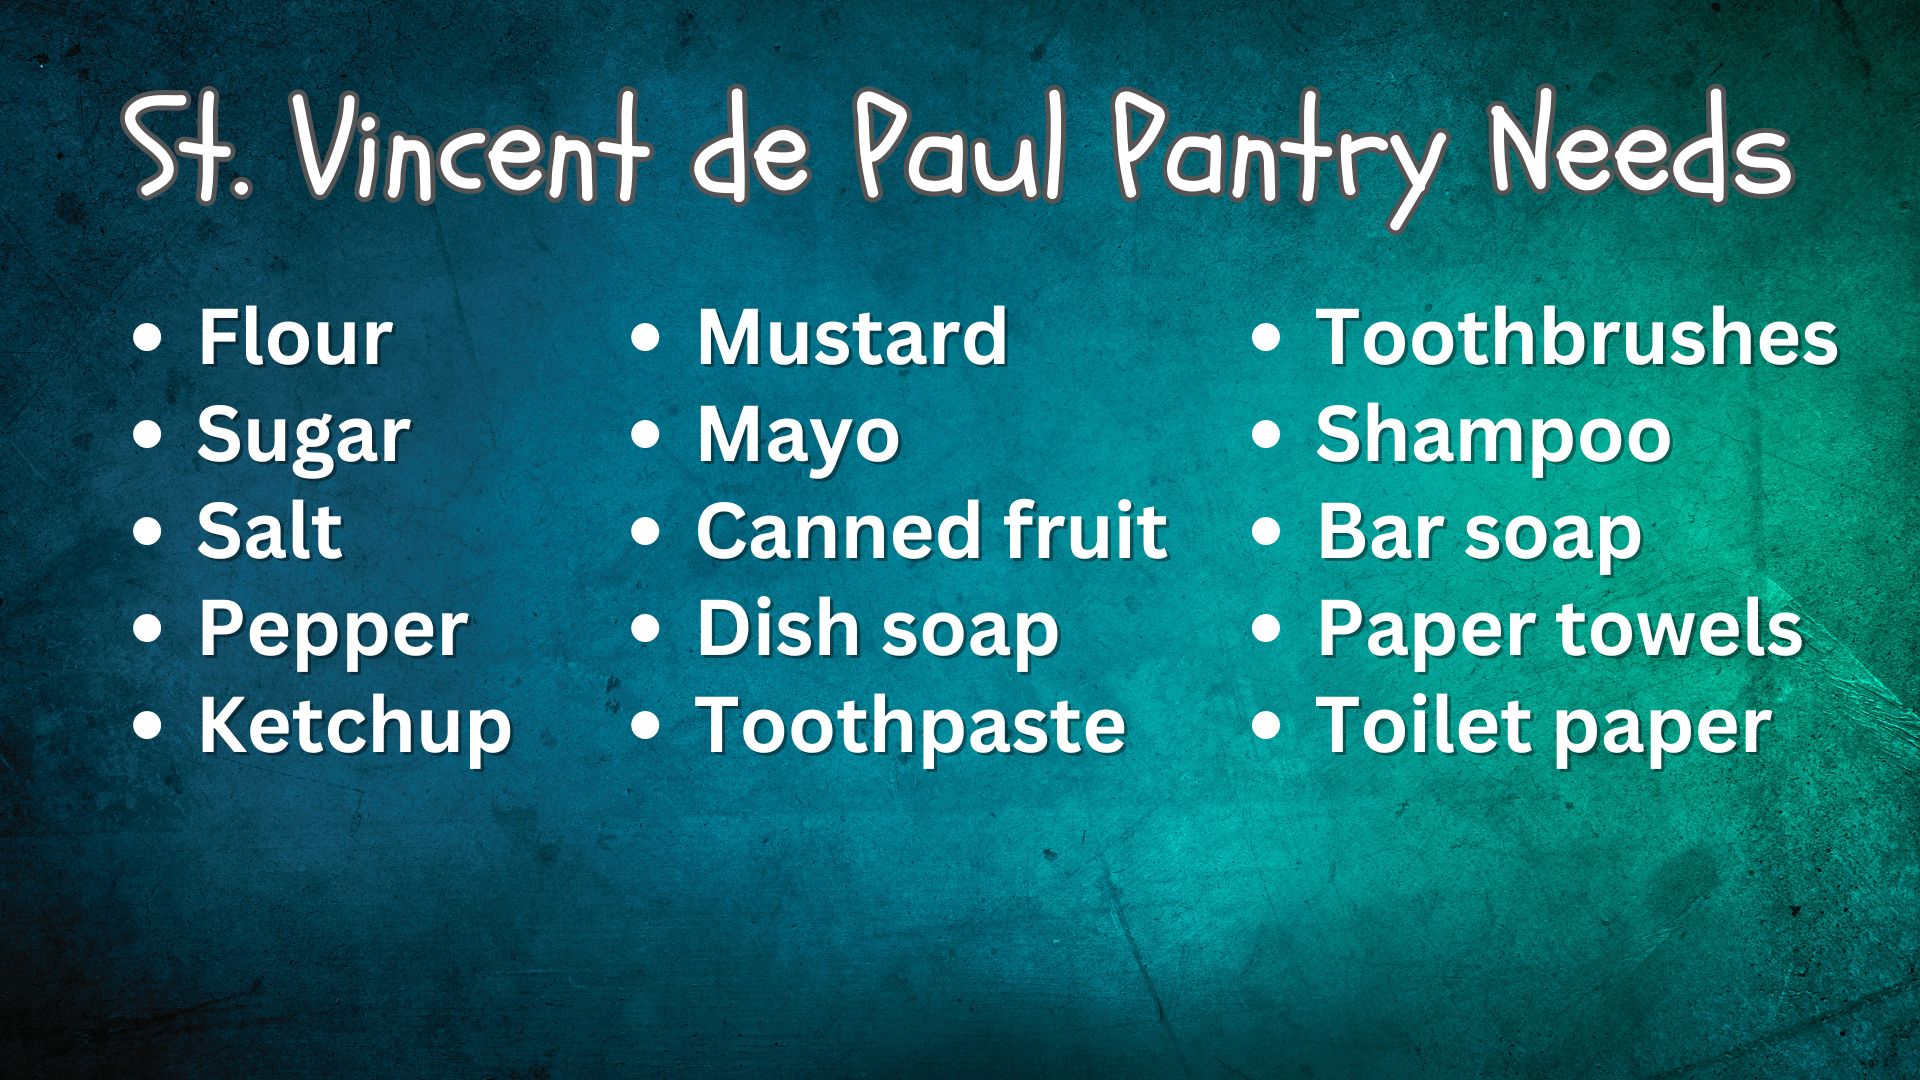 St. Vincent de Paul Pantry Needs